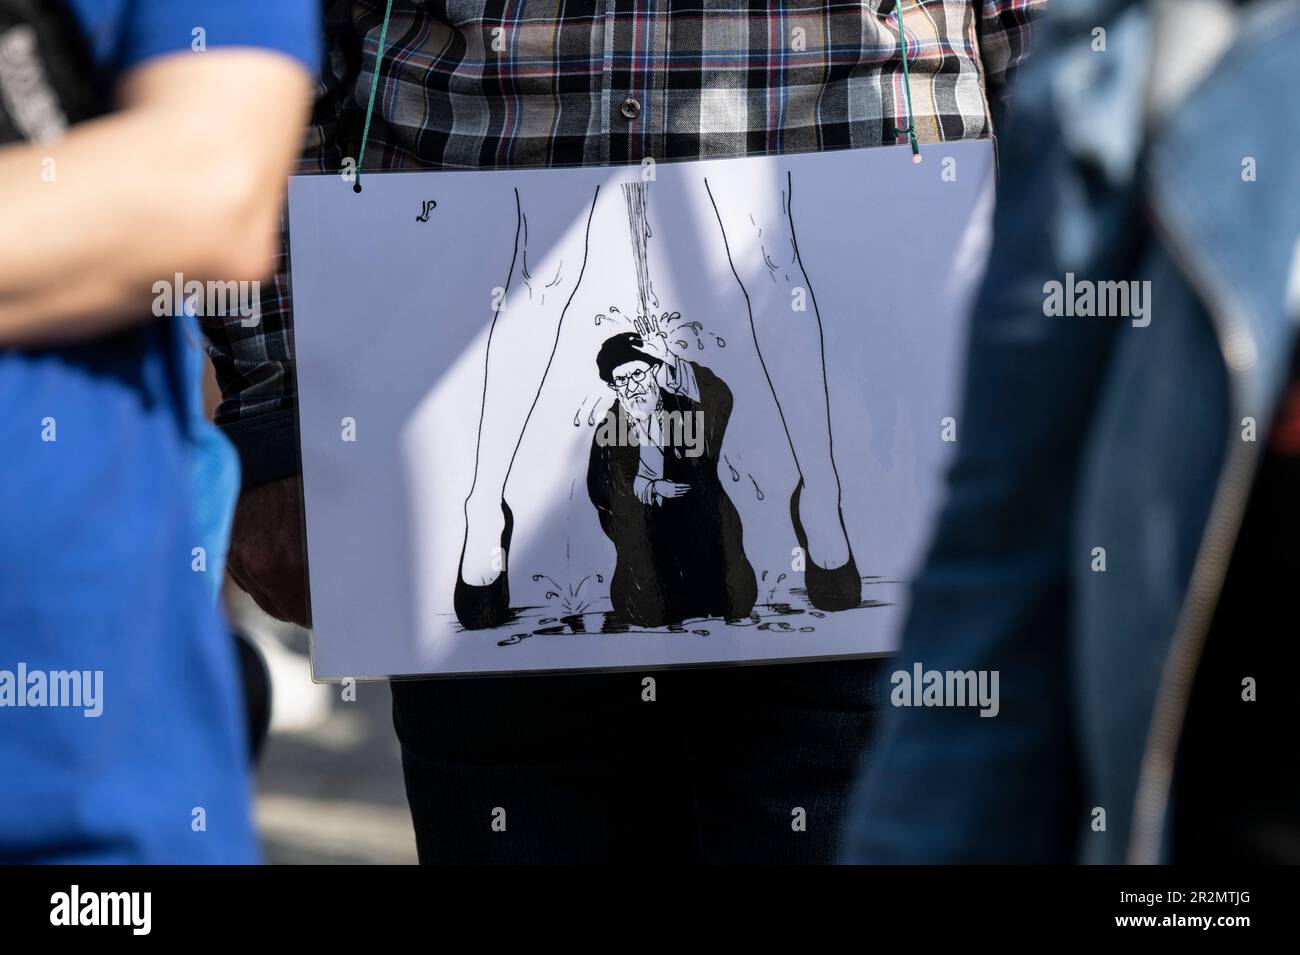 20 maggio 2023, Assia, Francoforte sul meno: Gli esuli iraniani protestano contro le ultime esecuzioni in Iran davanti all'Alte Oper di Francoforte. Una caricatura mostra l'immagine di Ali Khamenei, il leader supremo dell'Iran. Foto: Boris Roessler/dpa Foto Stock